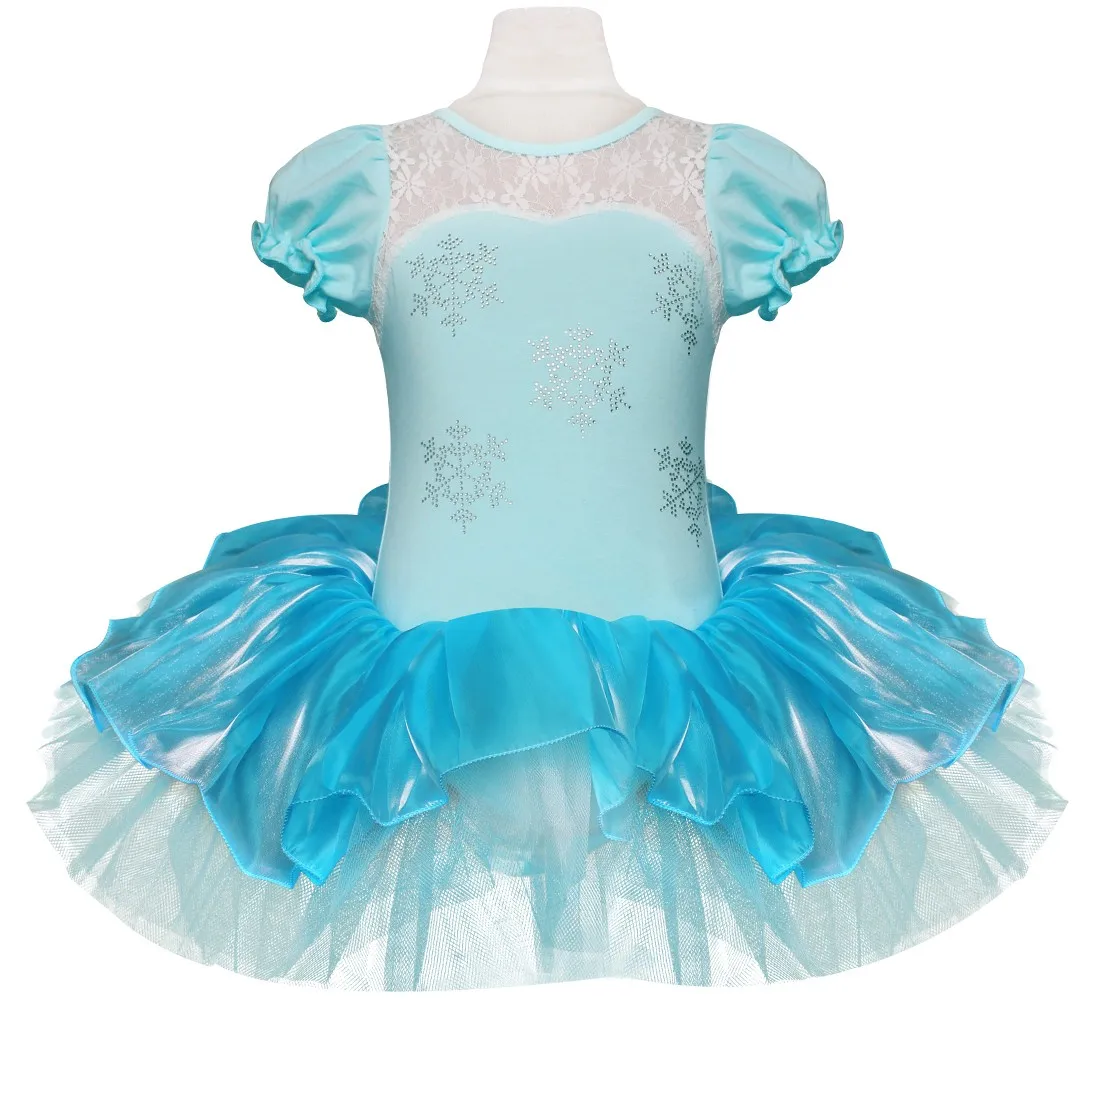 IIXPIN/детское балетное платье-пачка принцессы Эльзы для девочек пачка "Снежинка", Одежда для танцев, вечерние платья для трико для девушек, балерина, платье Эльзы - Цвет: Blue